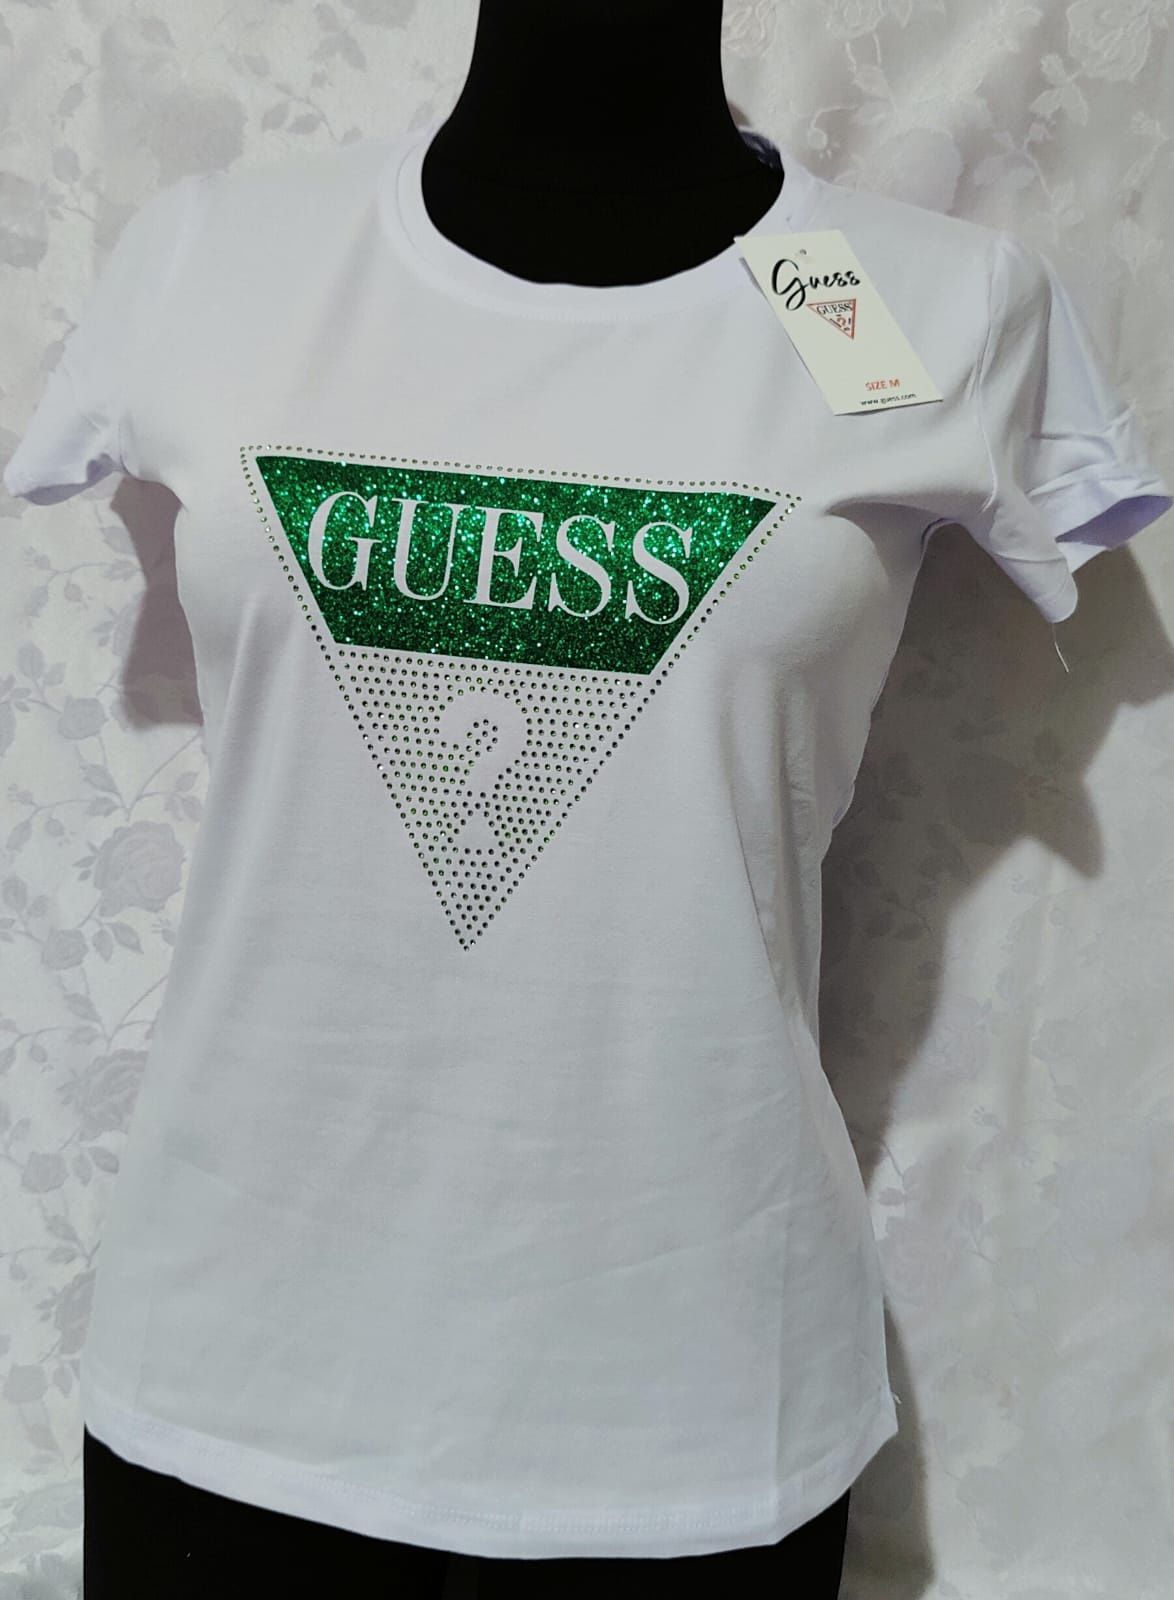 Biała koszulka damska Guess S M L XL wysyłka pobranie bardzo ładna hit